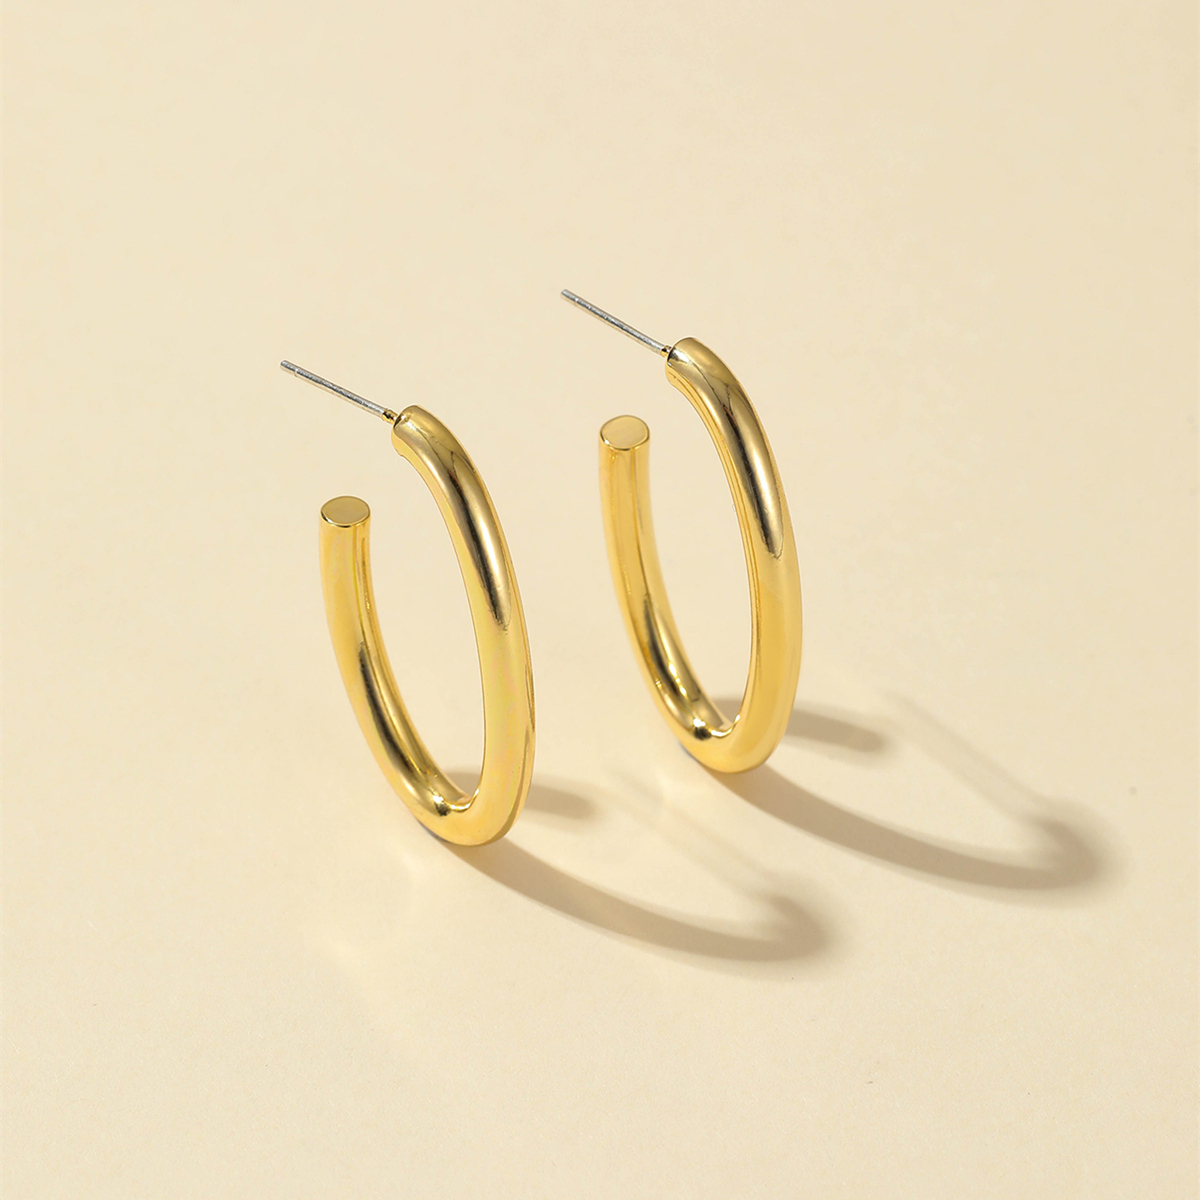 Leichter Luxus ins Pendler 925 silberne Nadel Ohrringe 2022 Kupfer beschichtetes Gold neue einfache Ohrringepicture2